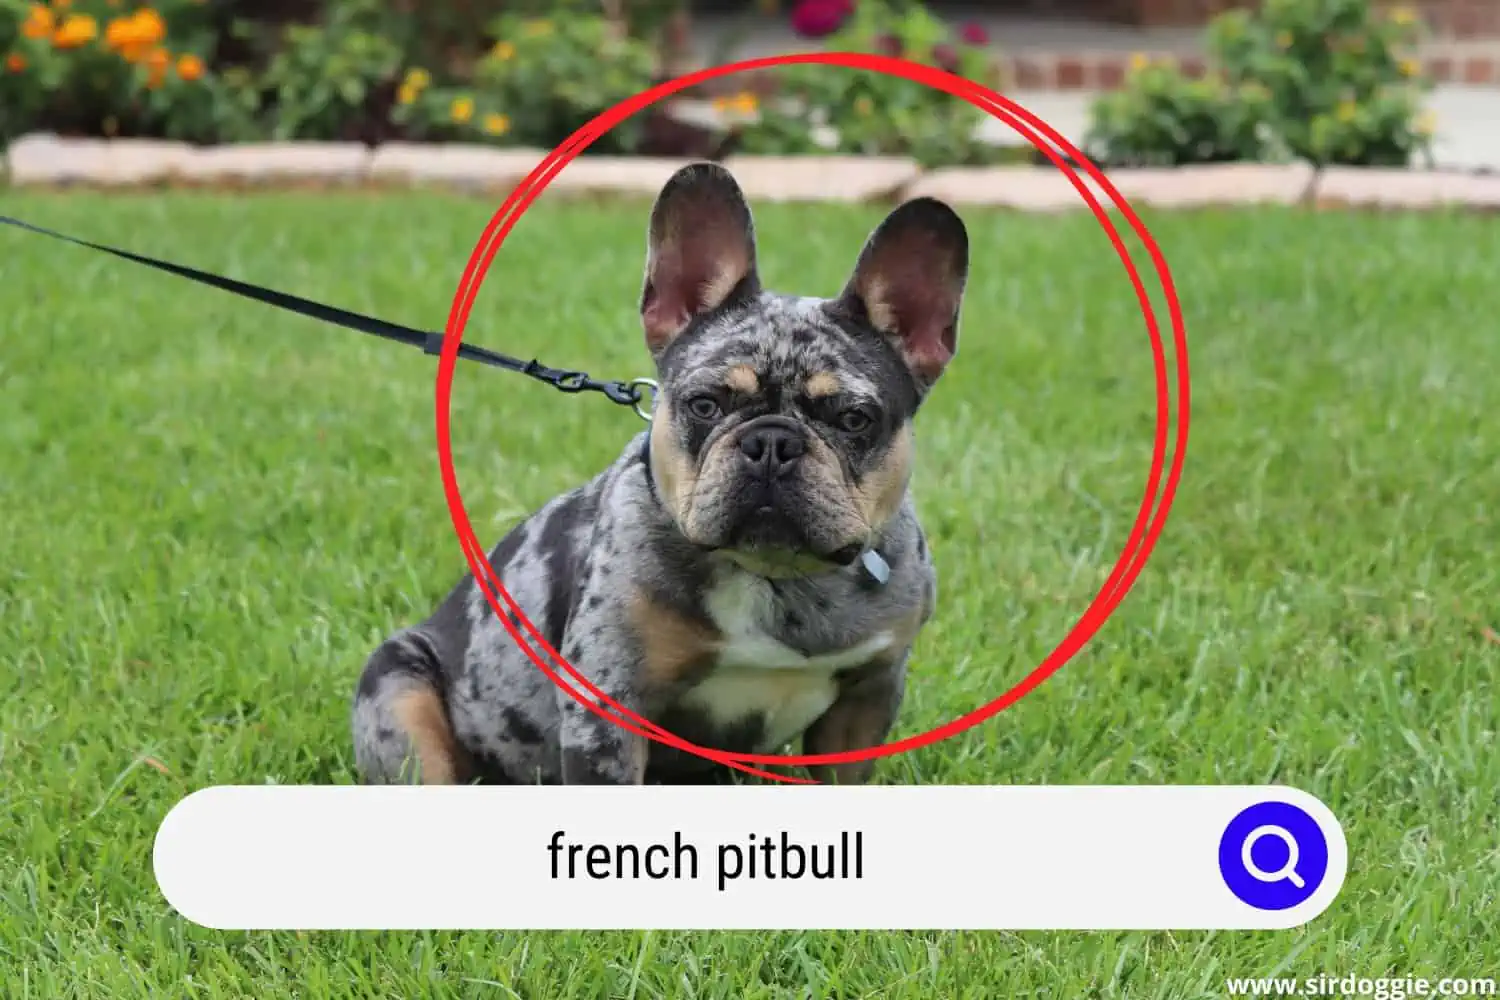 French Pitbull dog